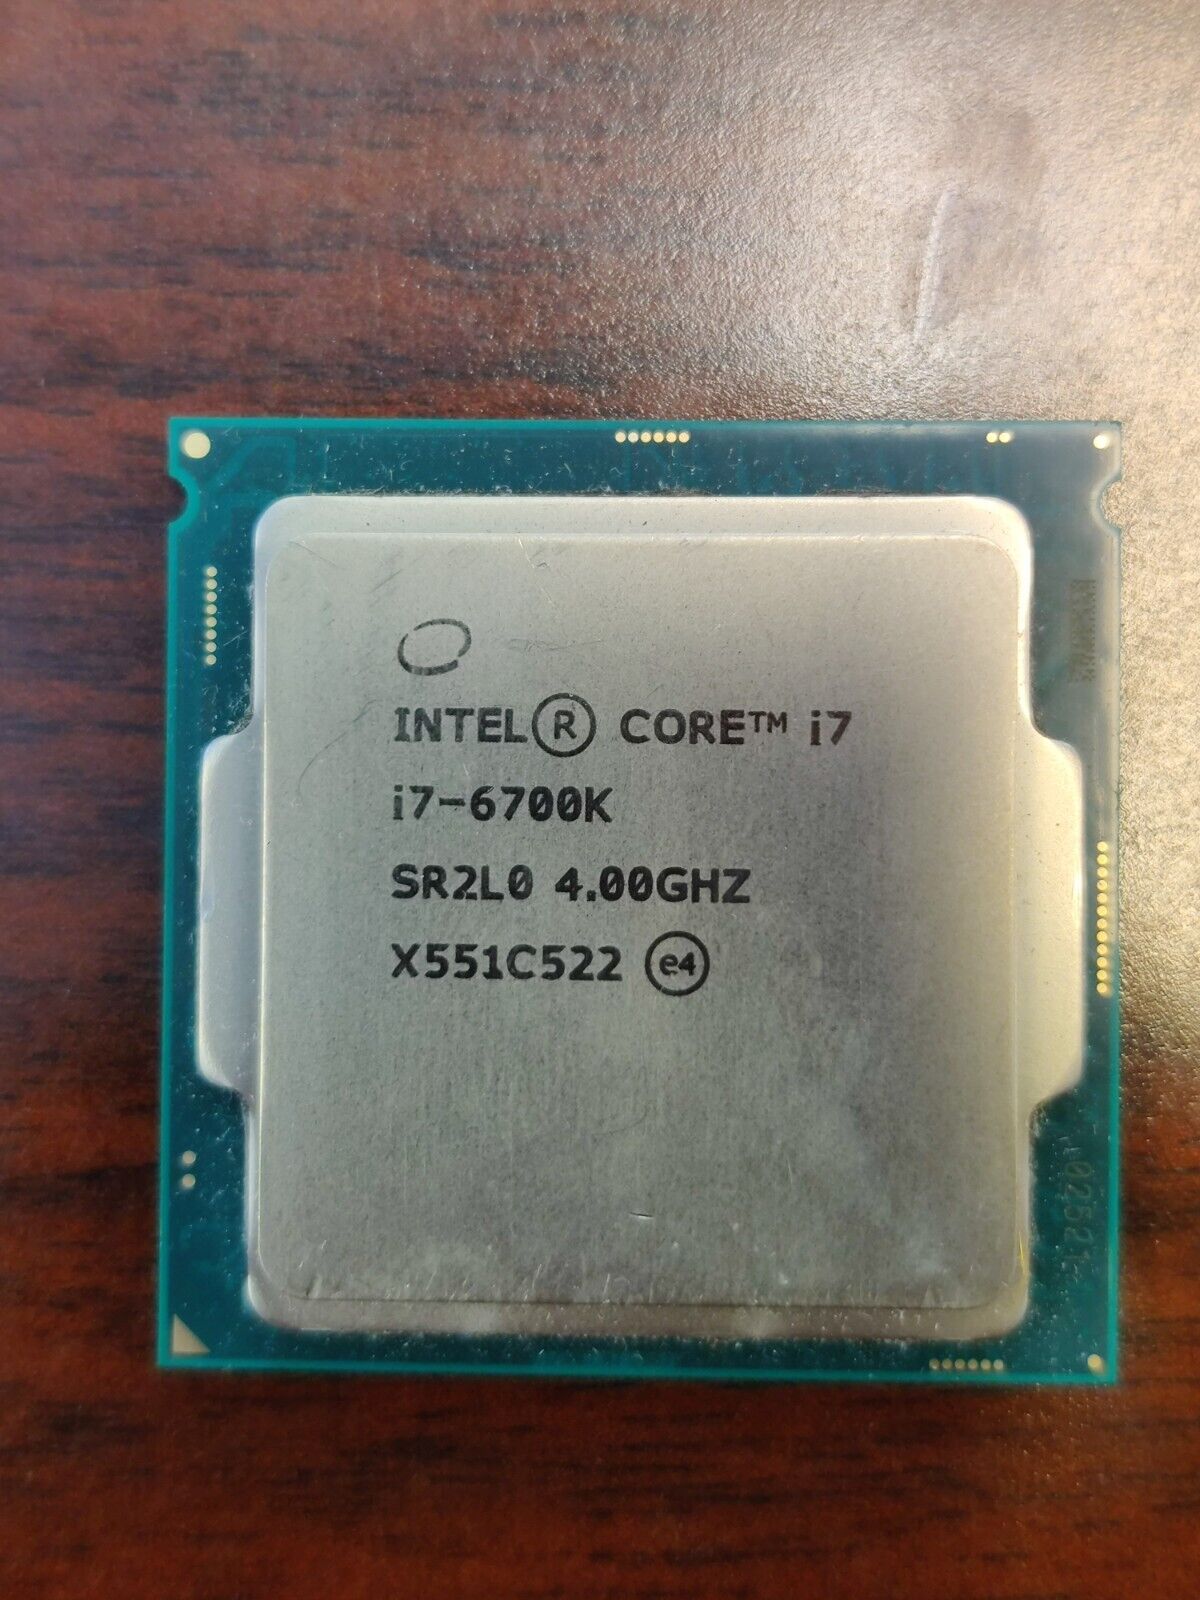 Intel Core i7-6700K 4.0GHz SR2L0 Desktop Processor Socket 1151 CPU